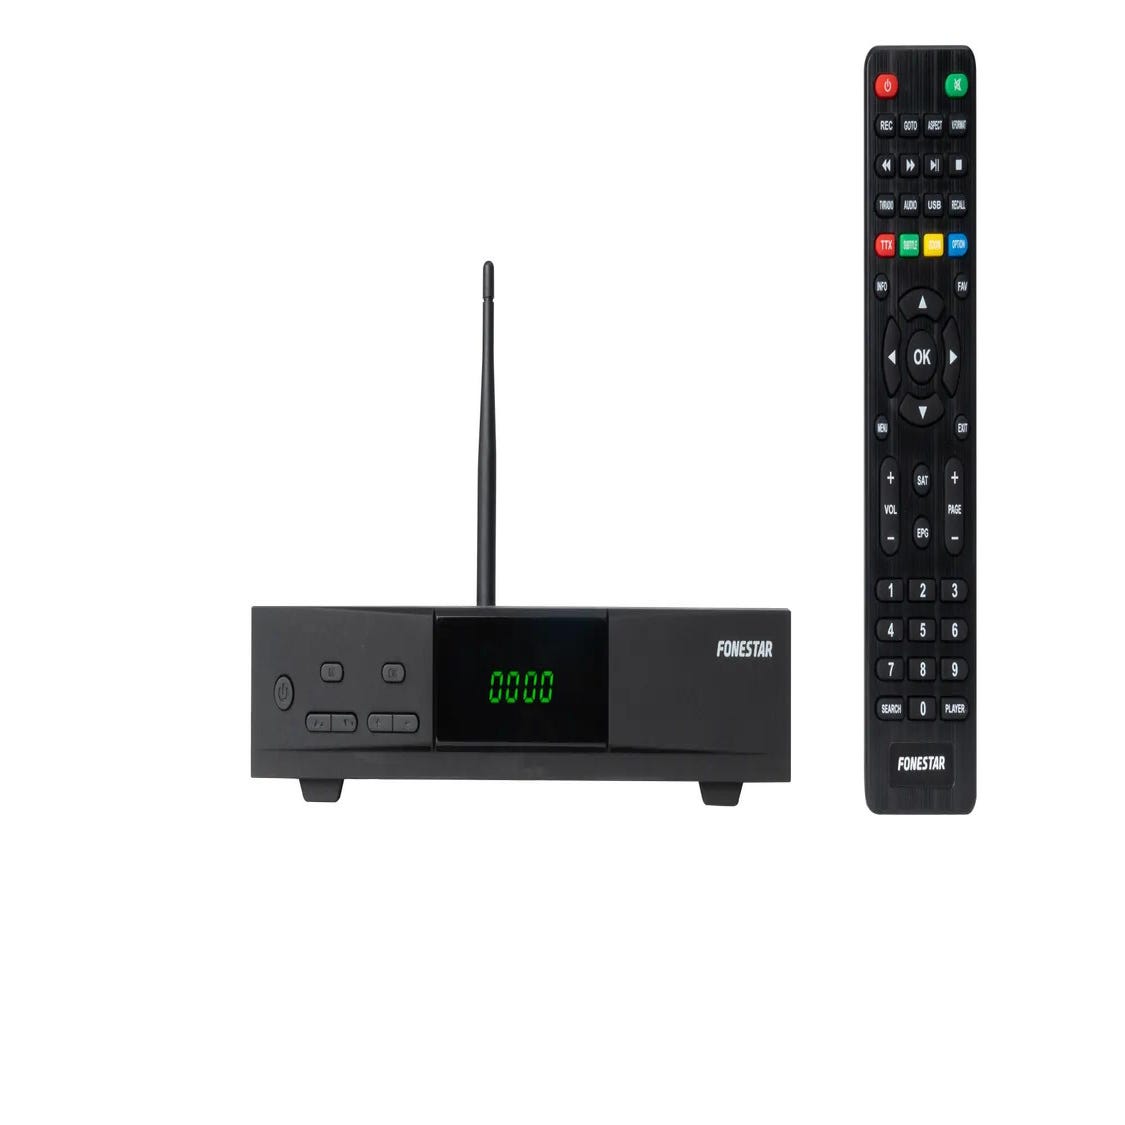 Receptores Smart TV - Audio y Video - Tecnología